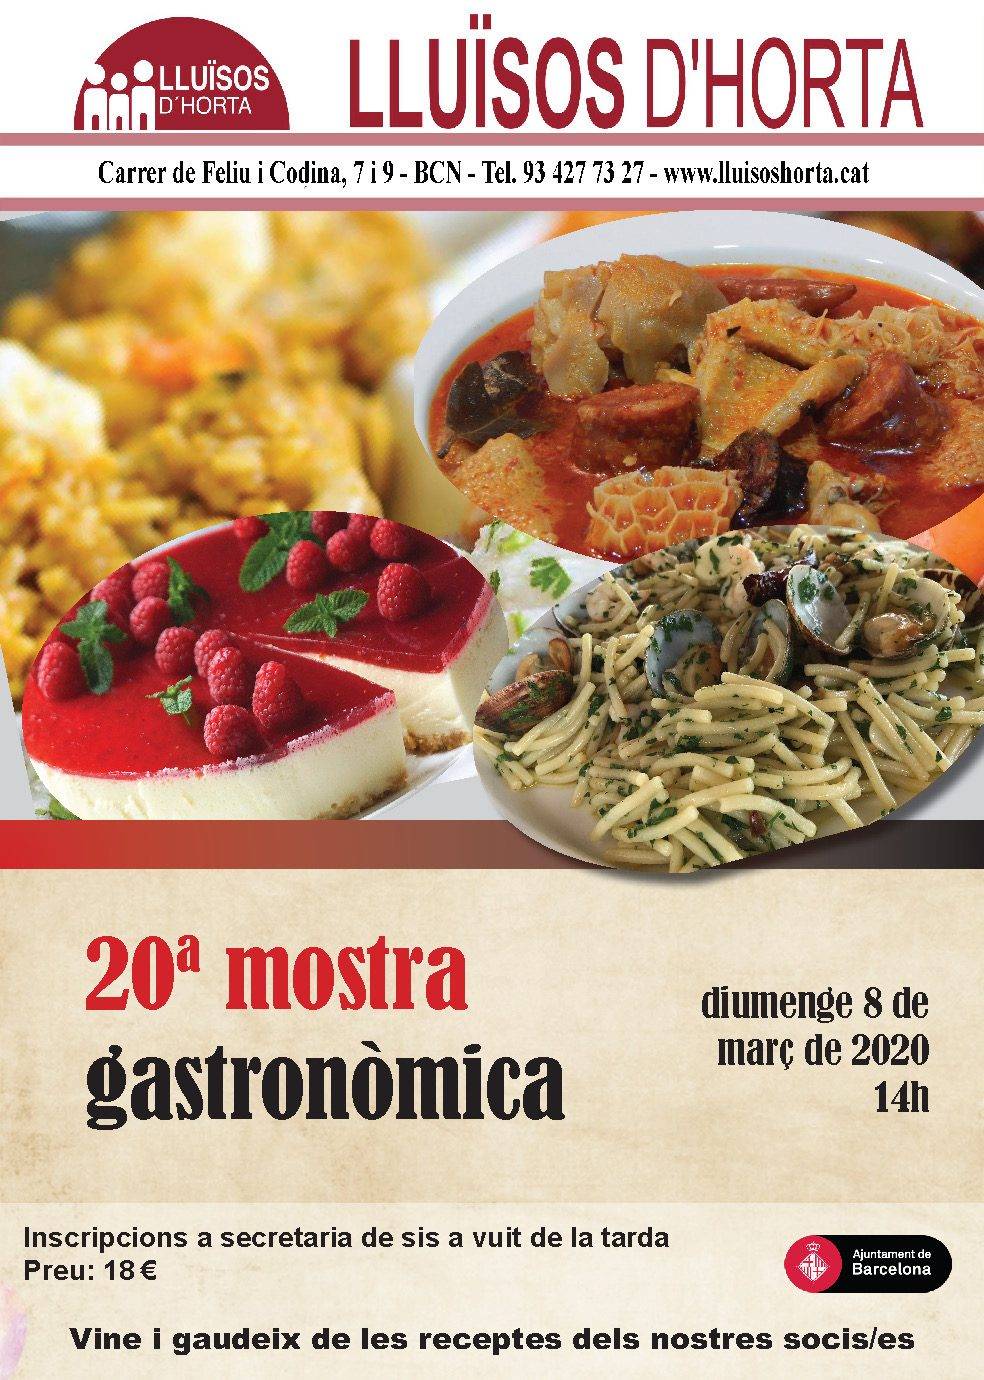 Mostra gastronòmica als Lluïsos d'Horta 2020